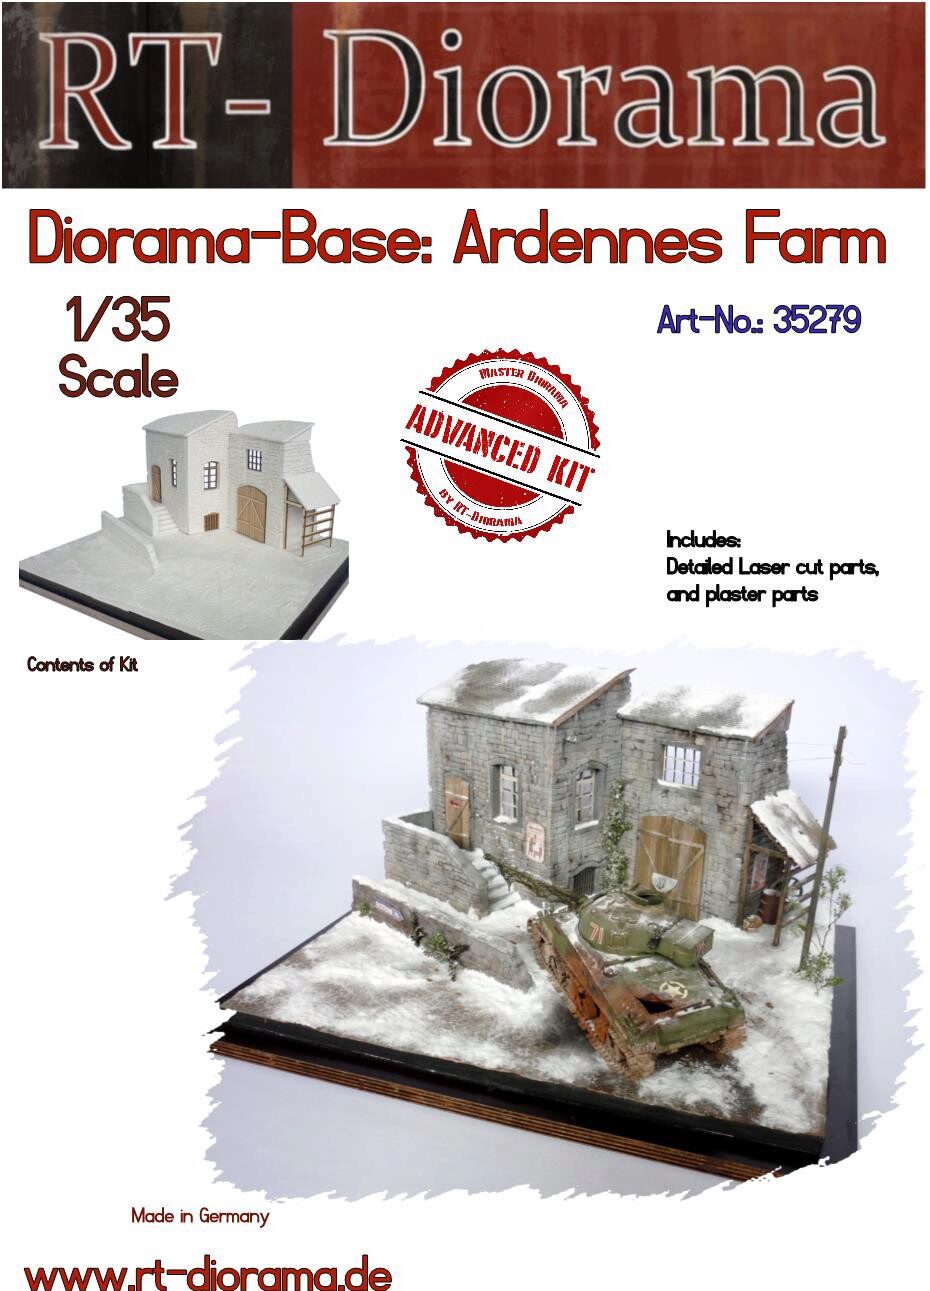 RT-DIORAMA 35279s Diorama-Base: Ardennes Farm [Standard]